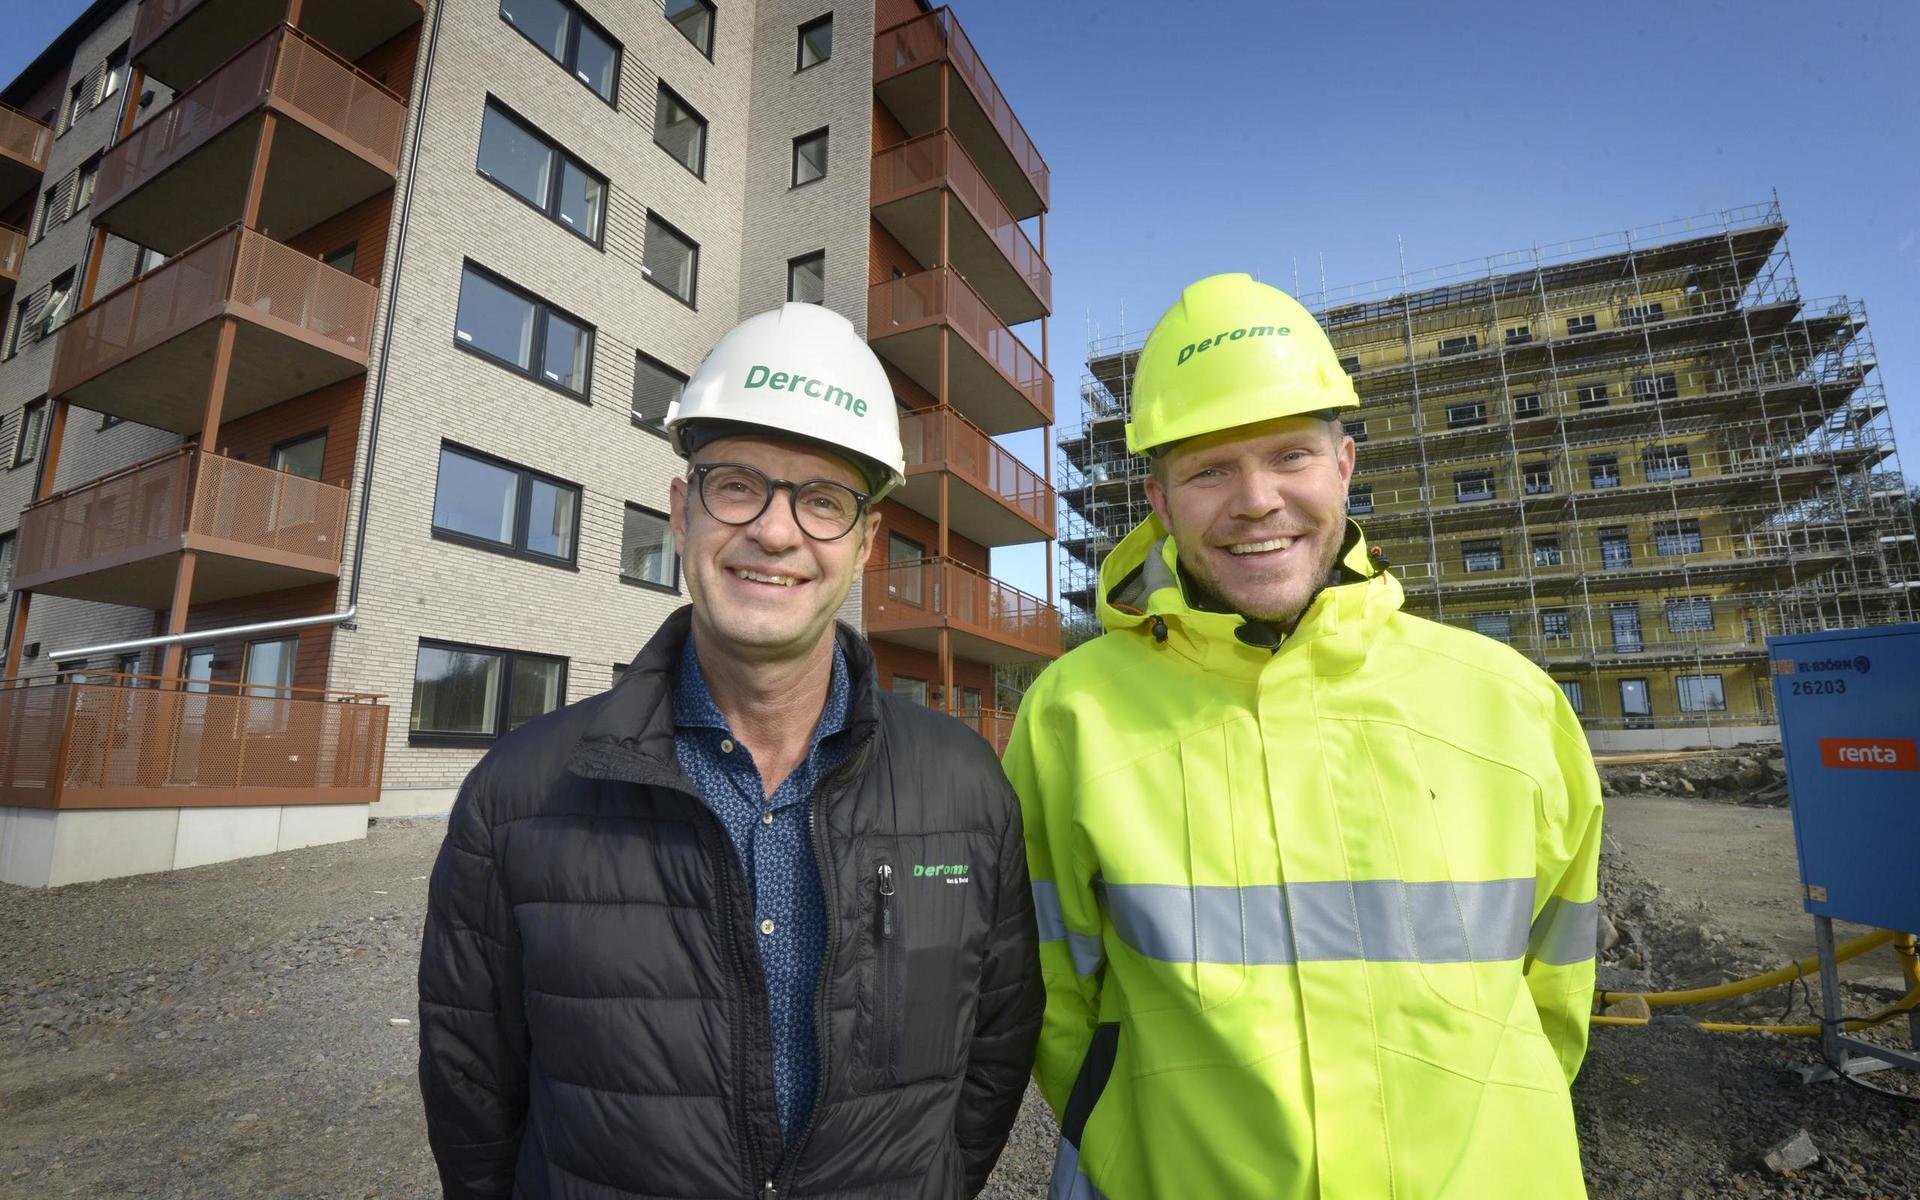 Glada chefer. Vd Peter Mossbrant och husfabrikschefen Johan Axelsson är nöjda med de tryggade jobben. Husen i bakgrunden är de nya hyresrätter som Derome just nu bygger i Pilgläntan i Trönninge.